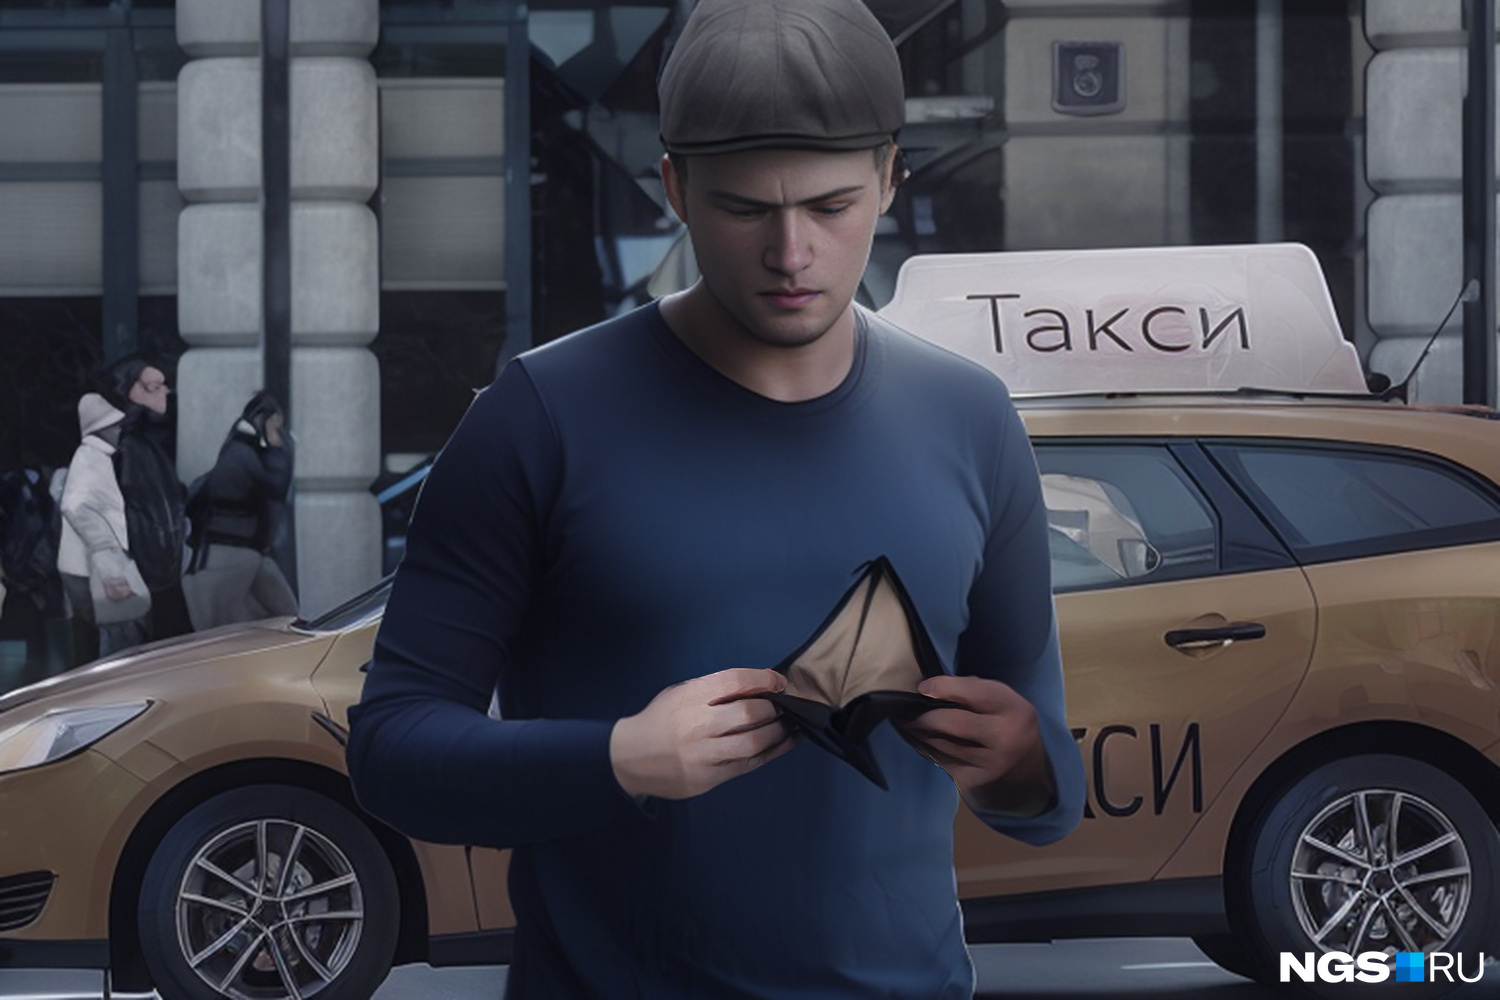 Алексей вспоминает, как просаживал все заработанные в такси деньги в букмекерской конторе